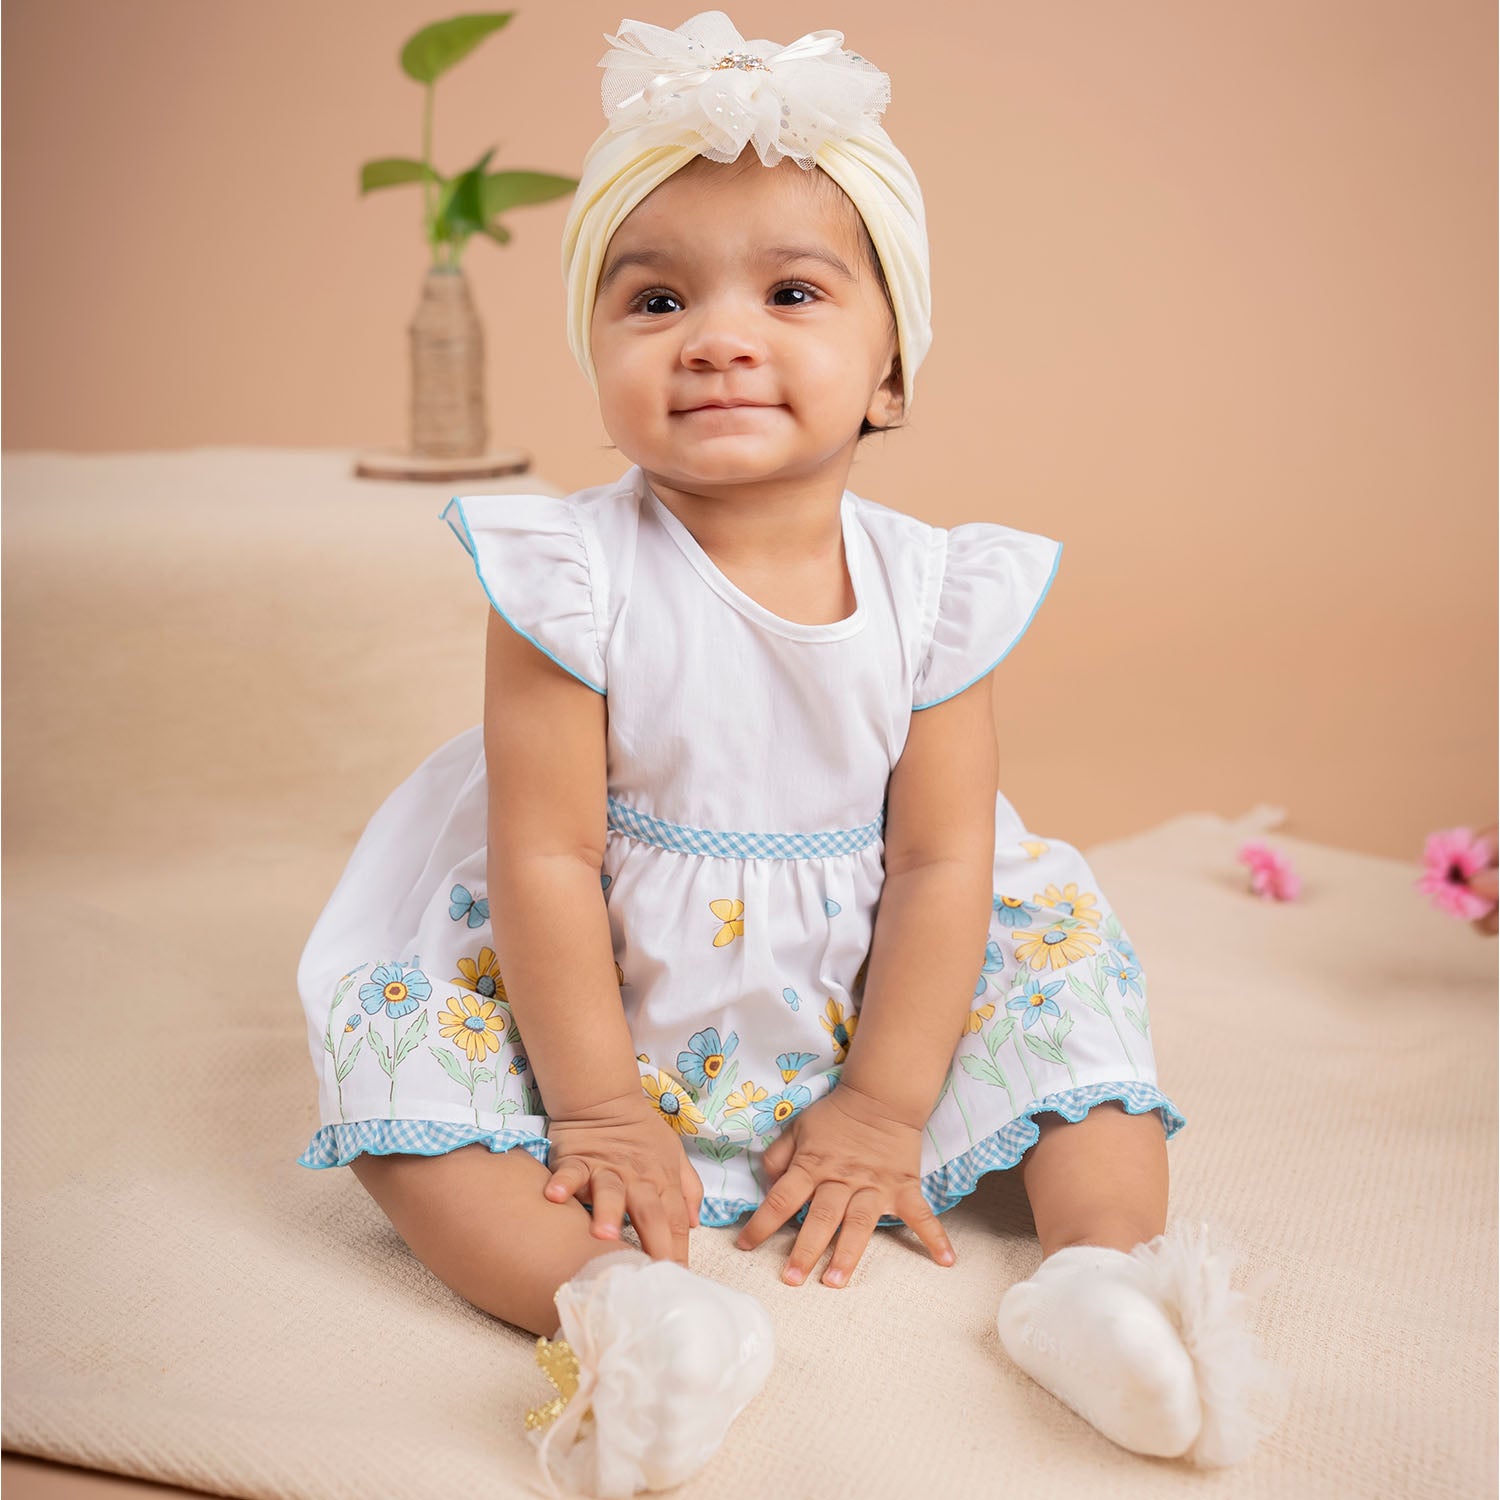 Baby Moo Royal Princess Crown Matching Cap And Socks Set - Yellow - Baby Moo